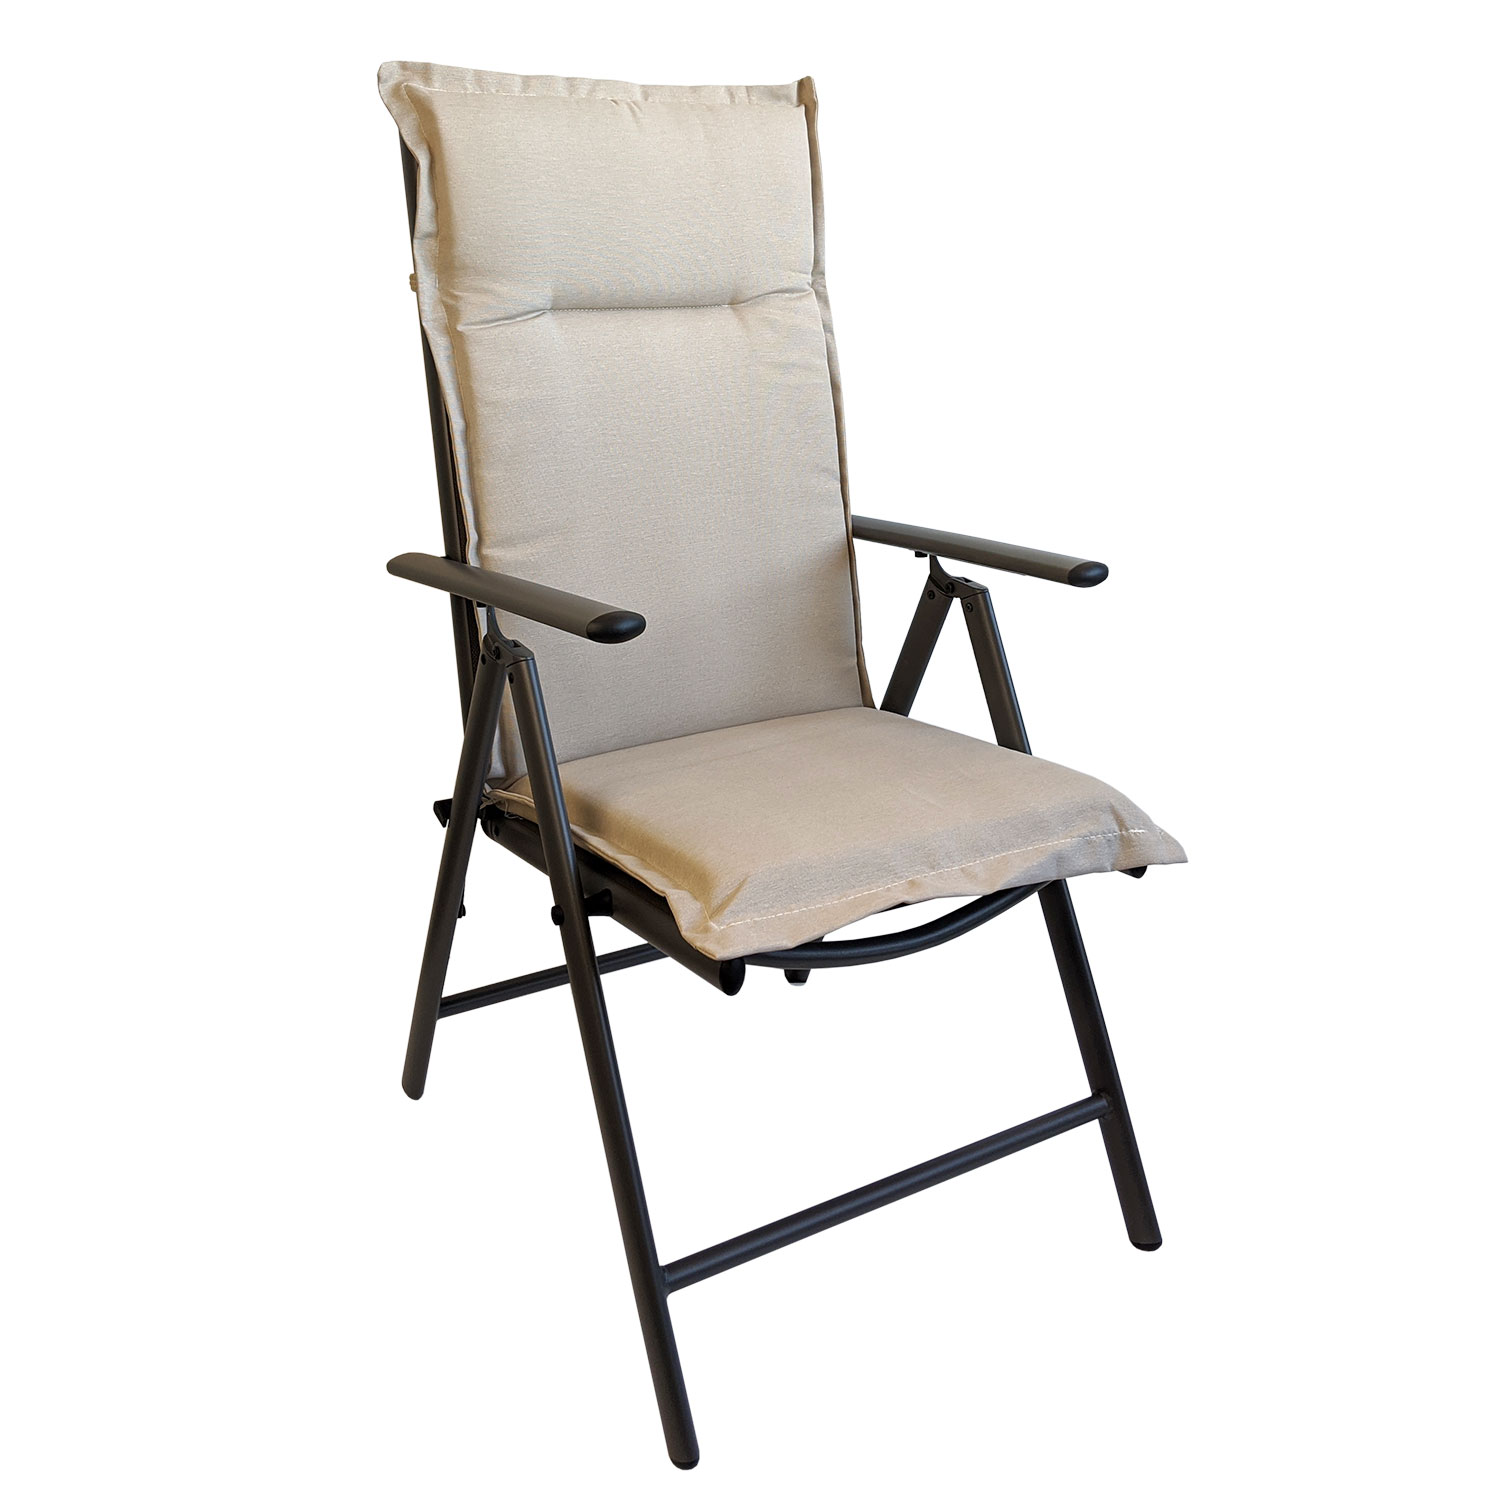 4 x Sitzauflage Hochlehner Polsterauflage Stuhlauflage Auflage extra dick Terra 